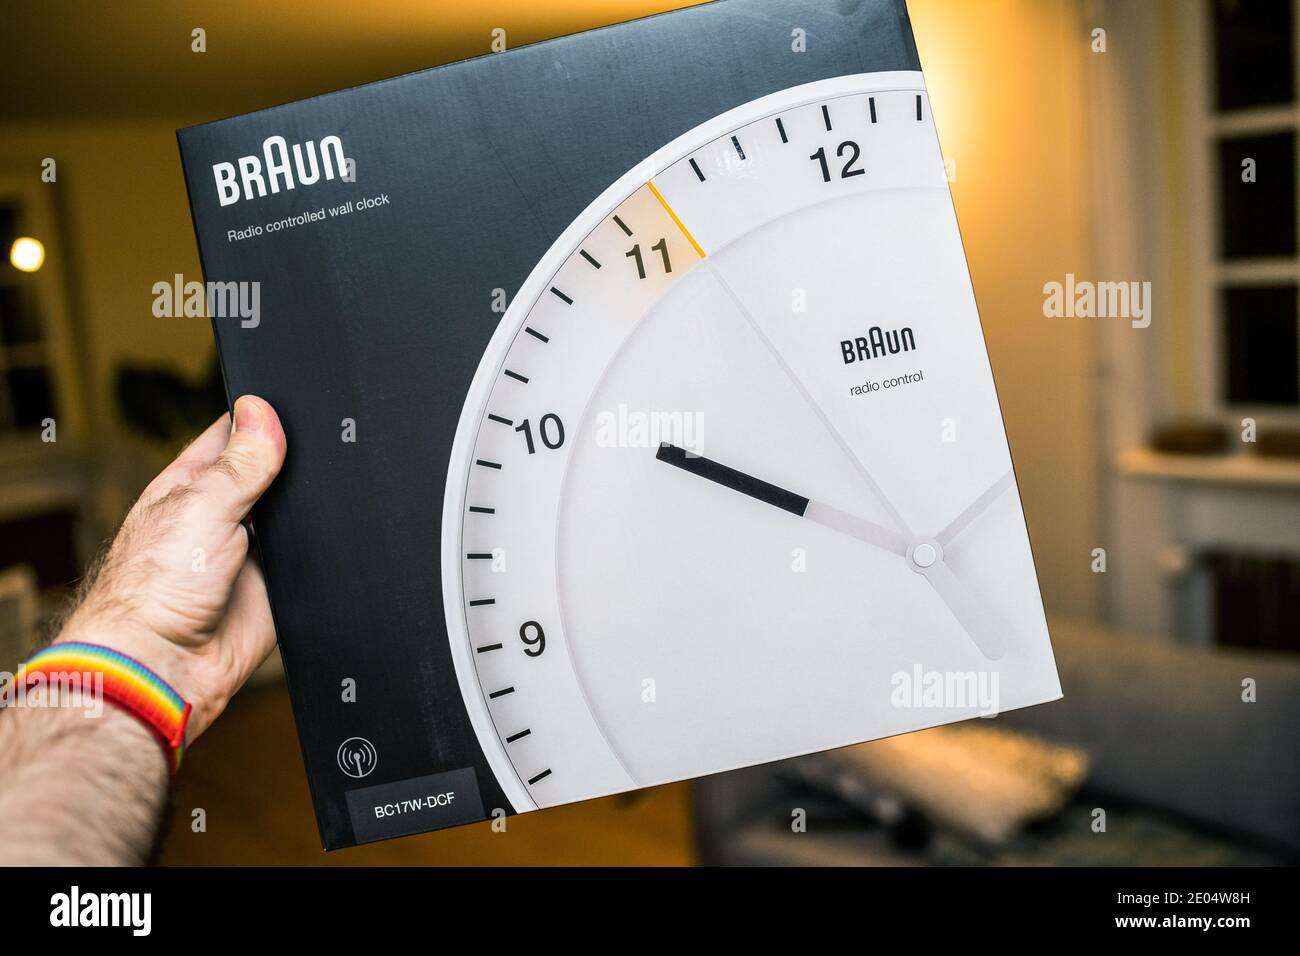 Paris, Francia - 8 de diciembre de 2020: POV perspectiva personal masculino  mano de la celebración de paquete de nuevo Braun BC17F-DCF- radio reloj de  pared controlado tradicional alemán diseño por Dieter